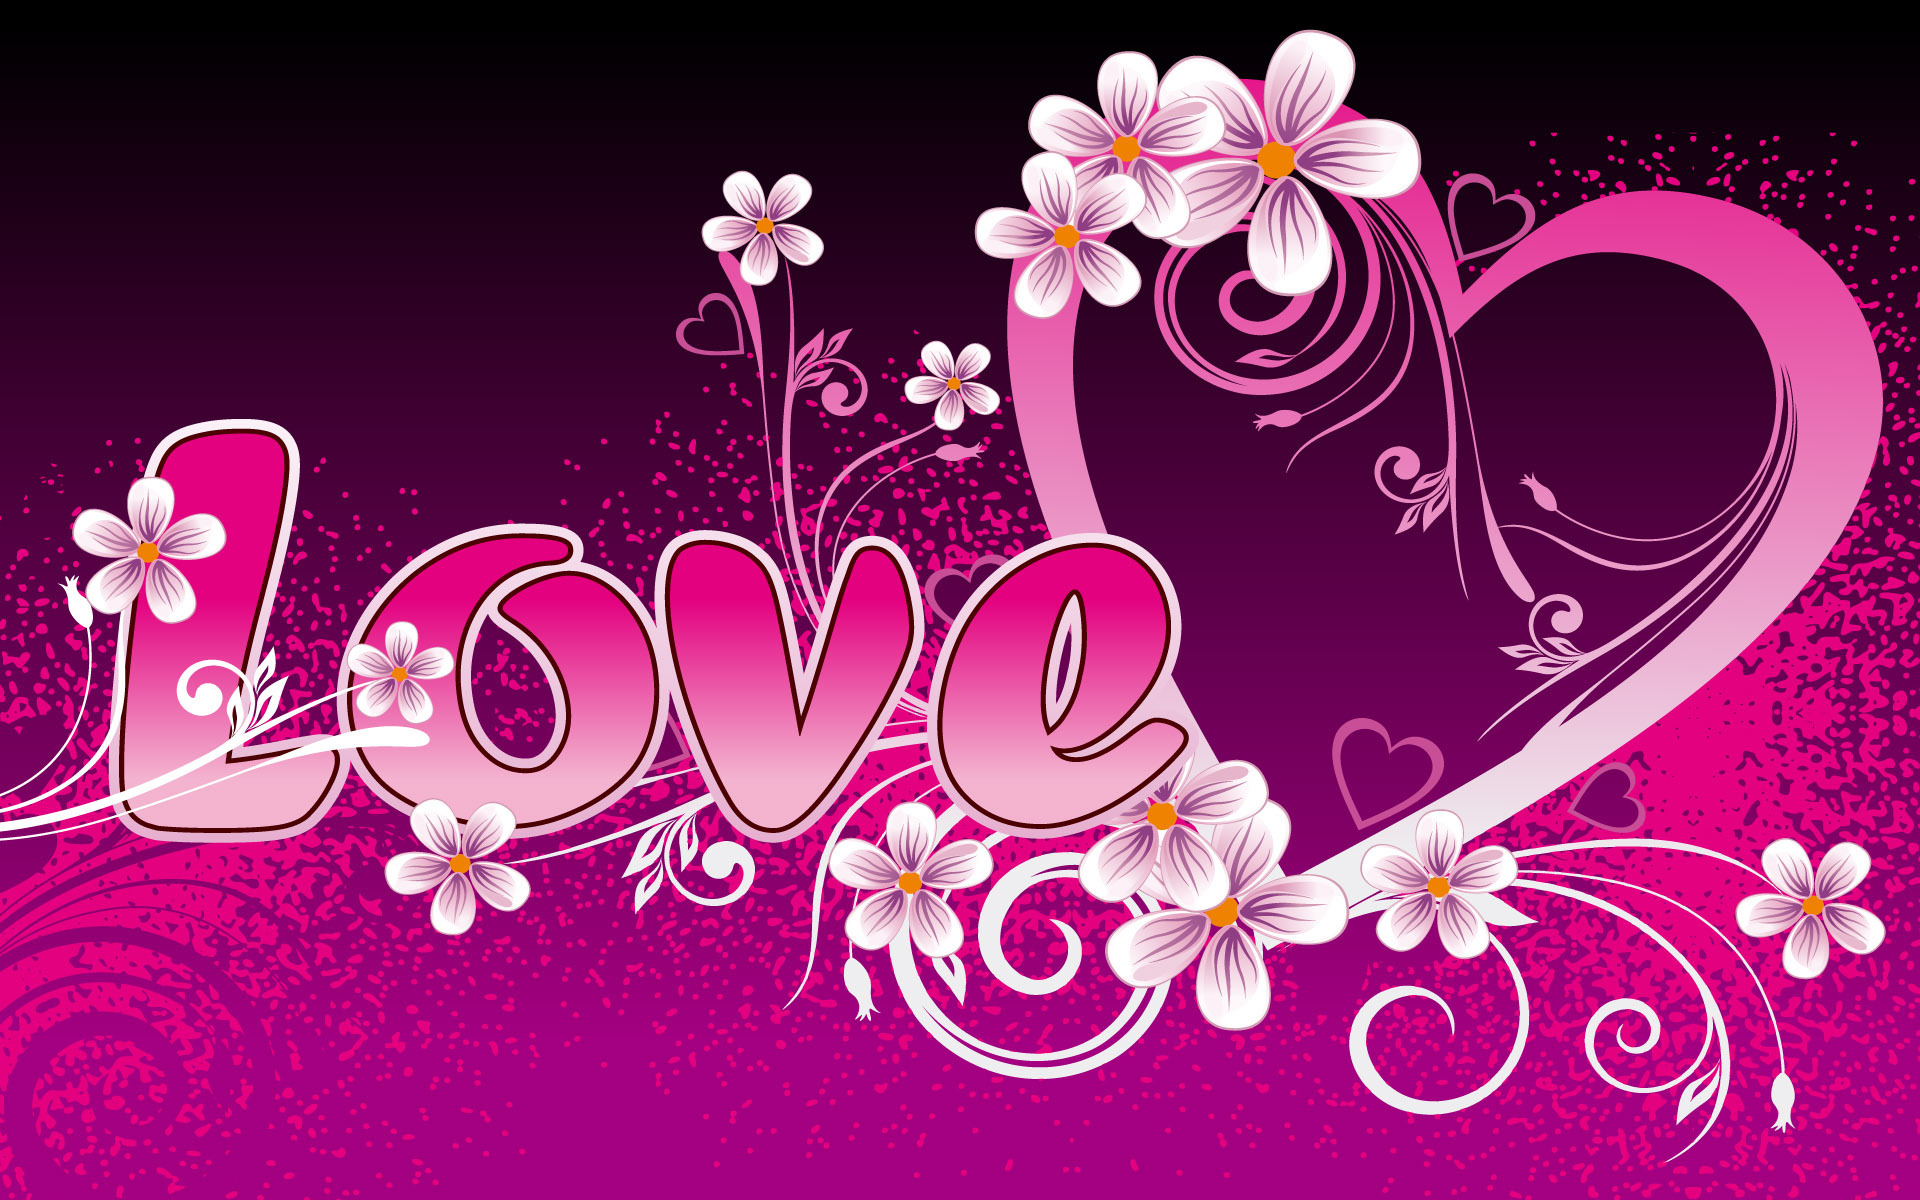 Lovely Love Design43131174 - Lovely Love Design - Lovely, Love, Design